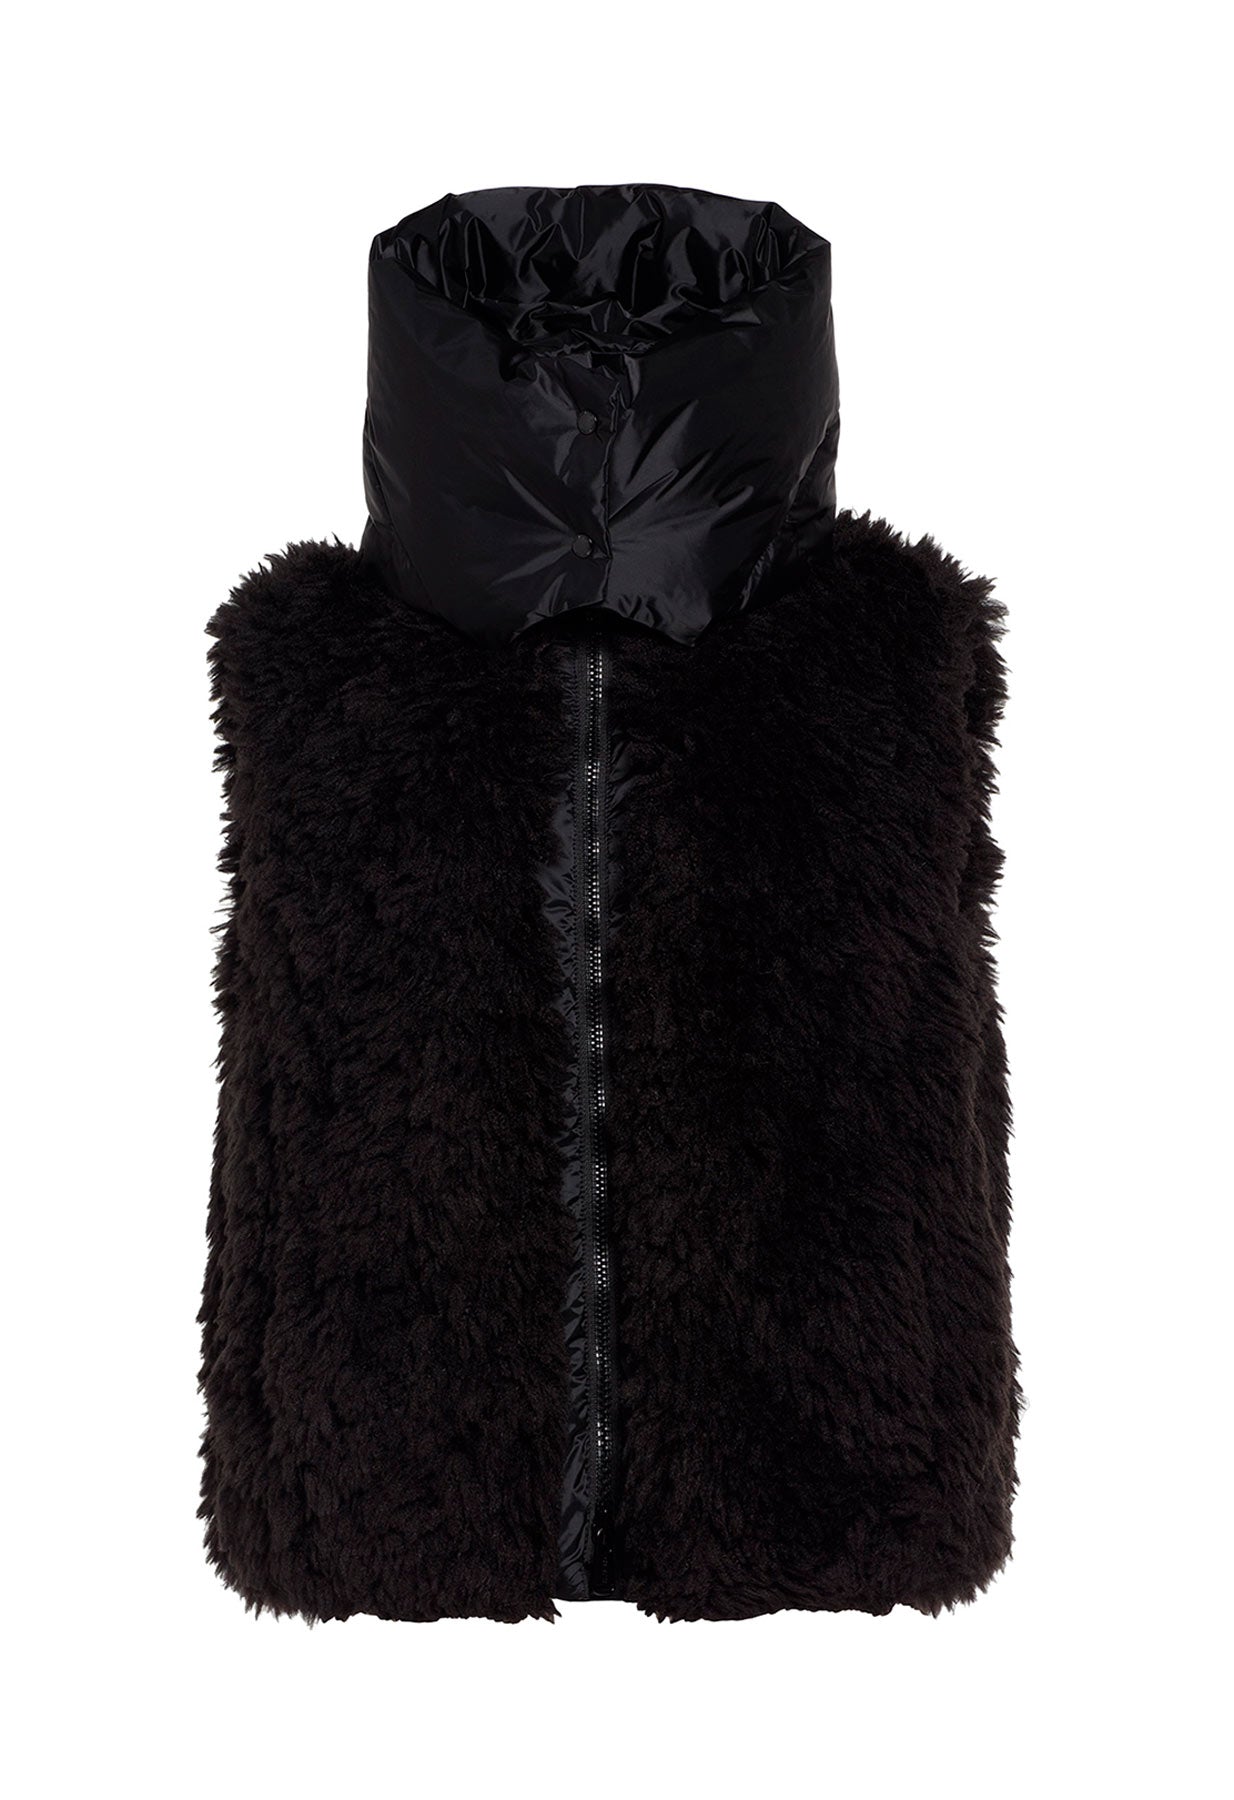 Goldbergh Iffy Faux Fur Bodywarmer in Black